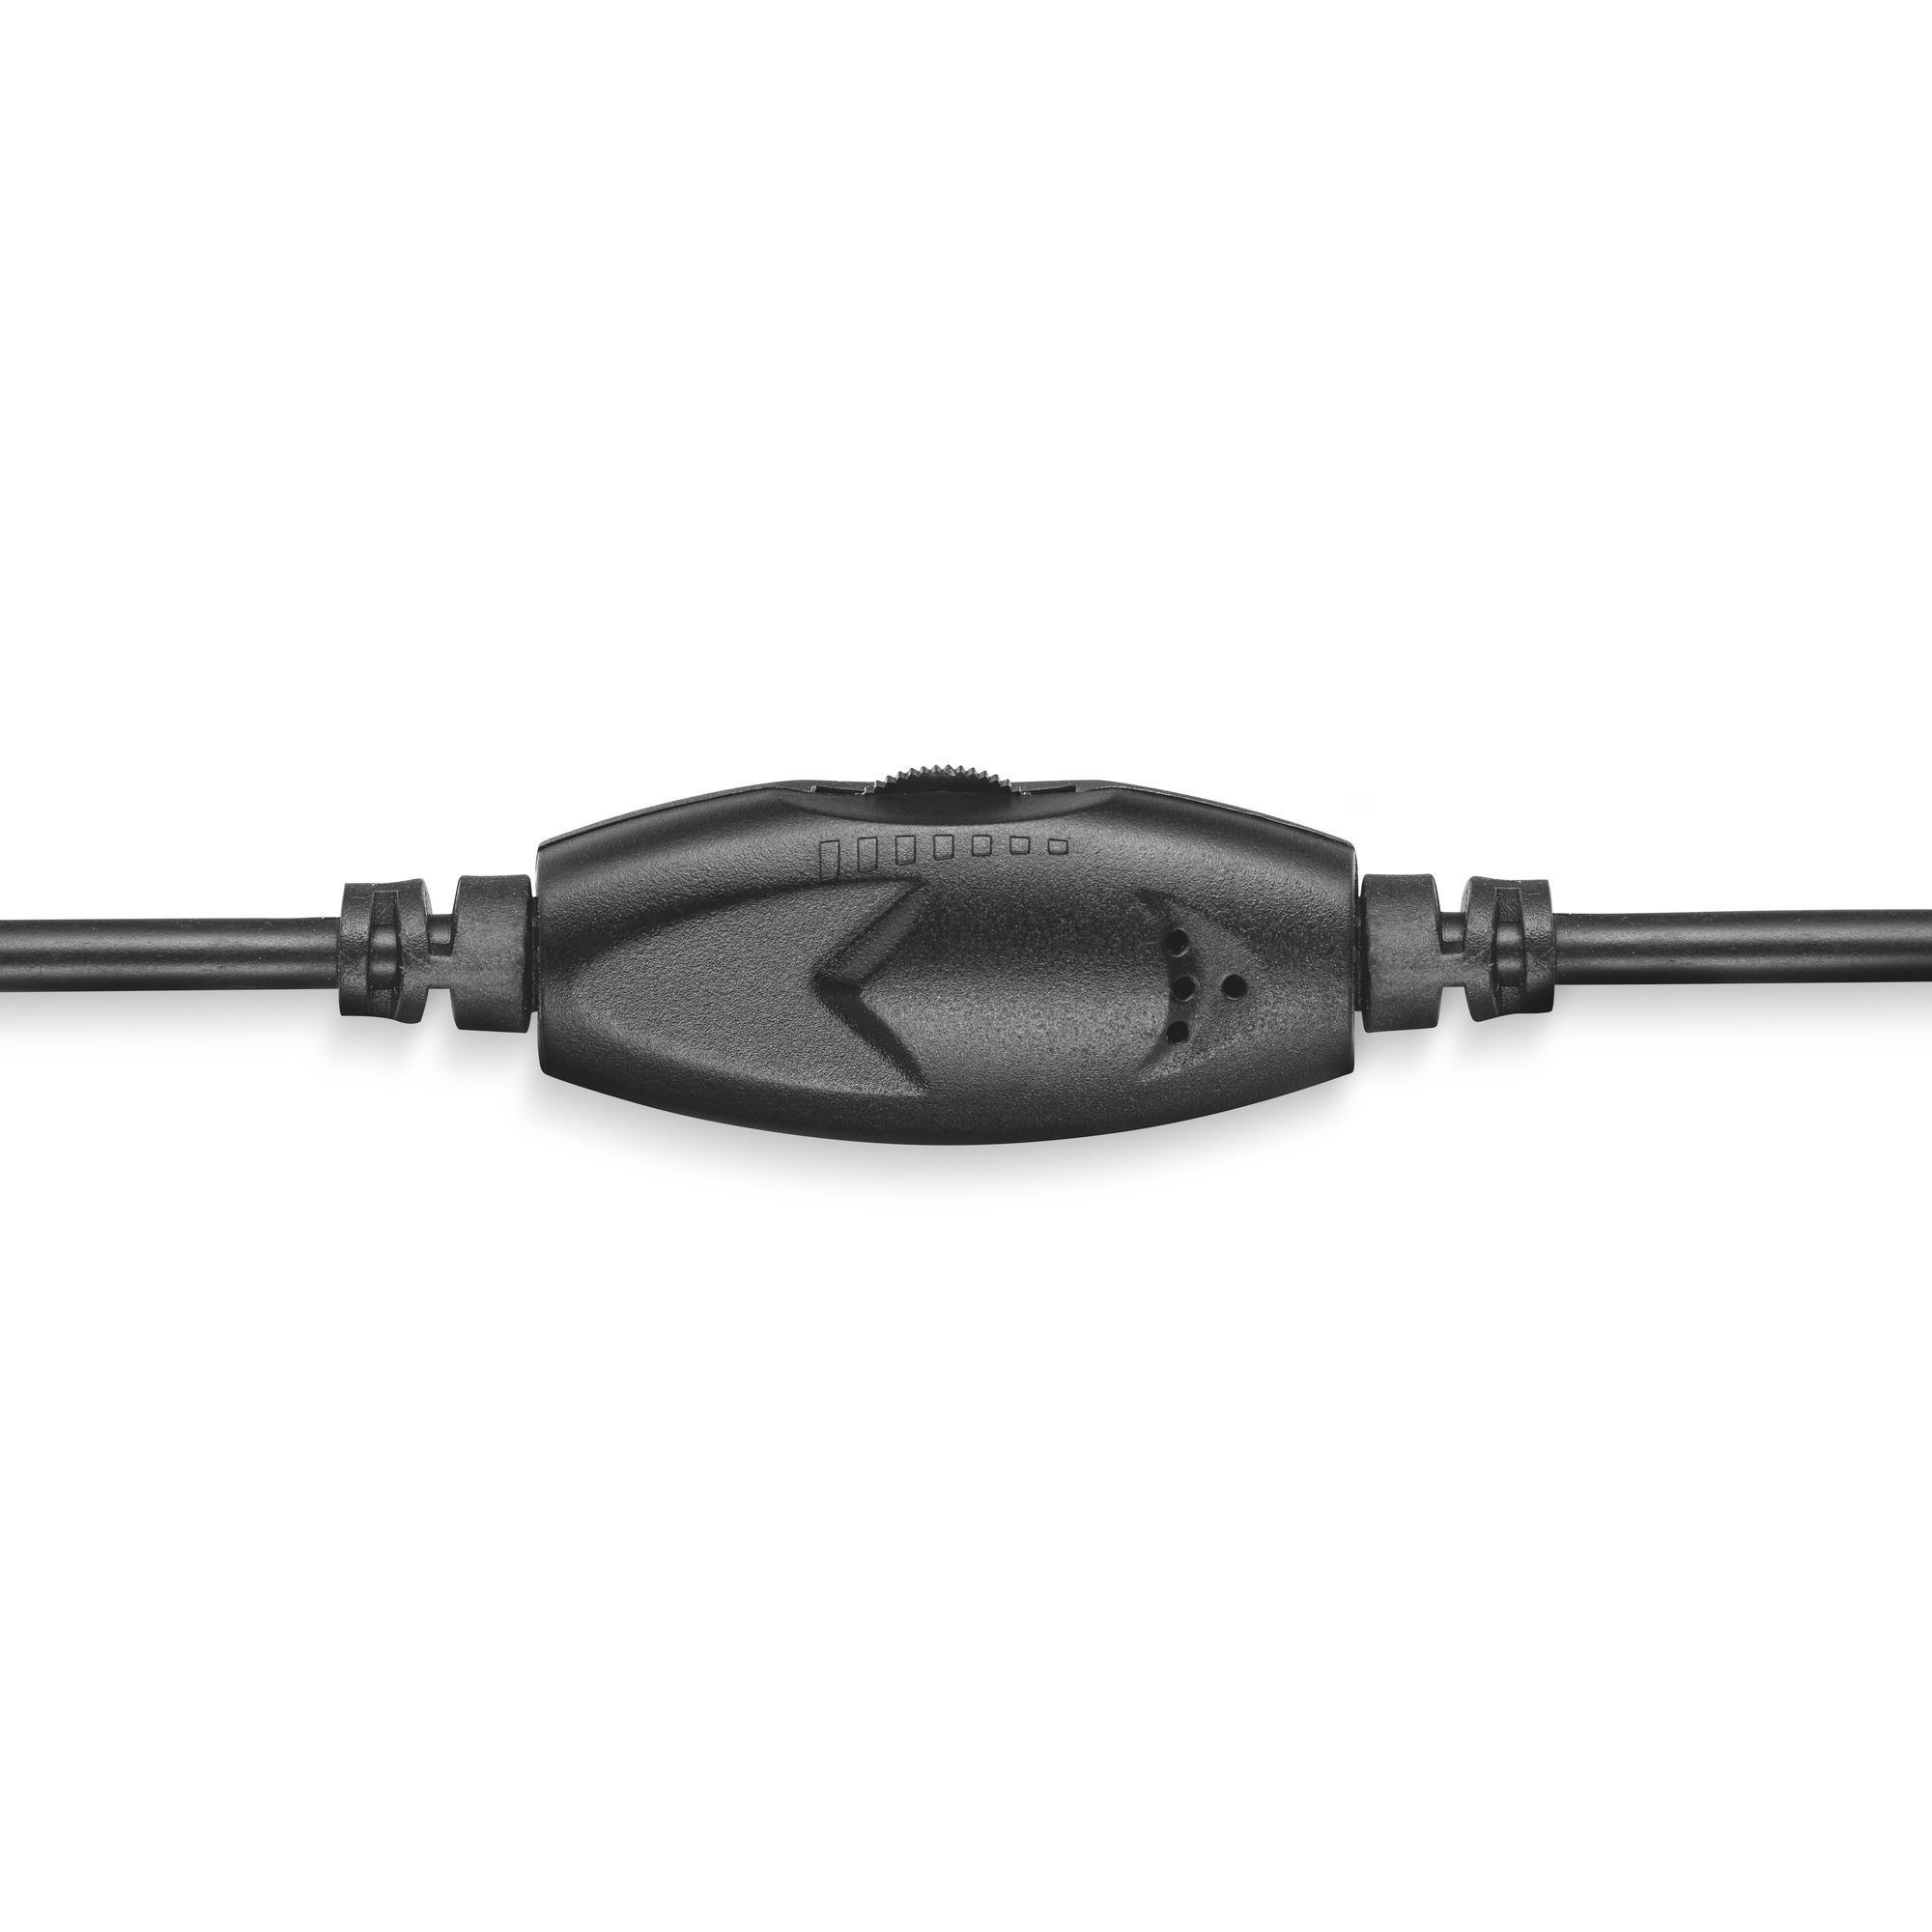 TRUST Primo Headset - On-ear Klinke 3.5 mm Schwarz mit